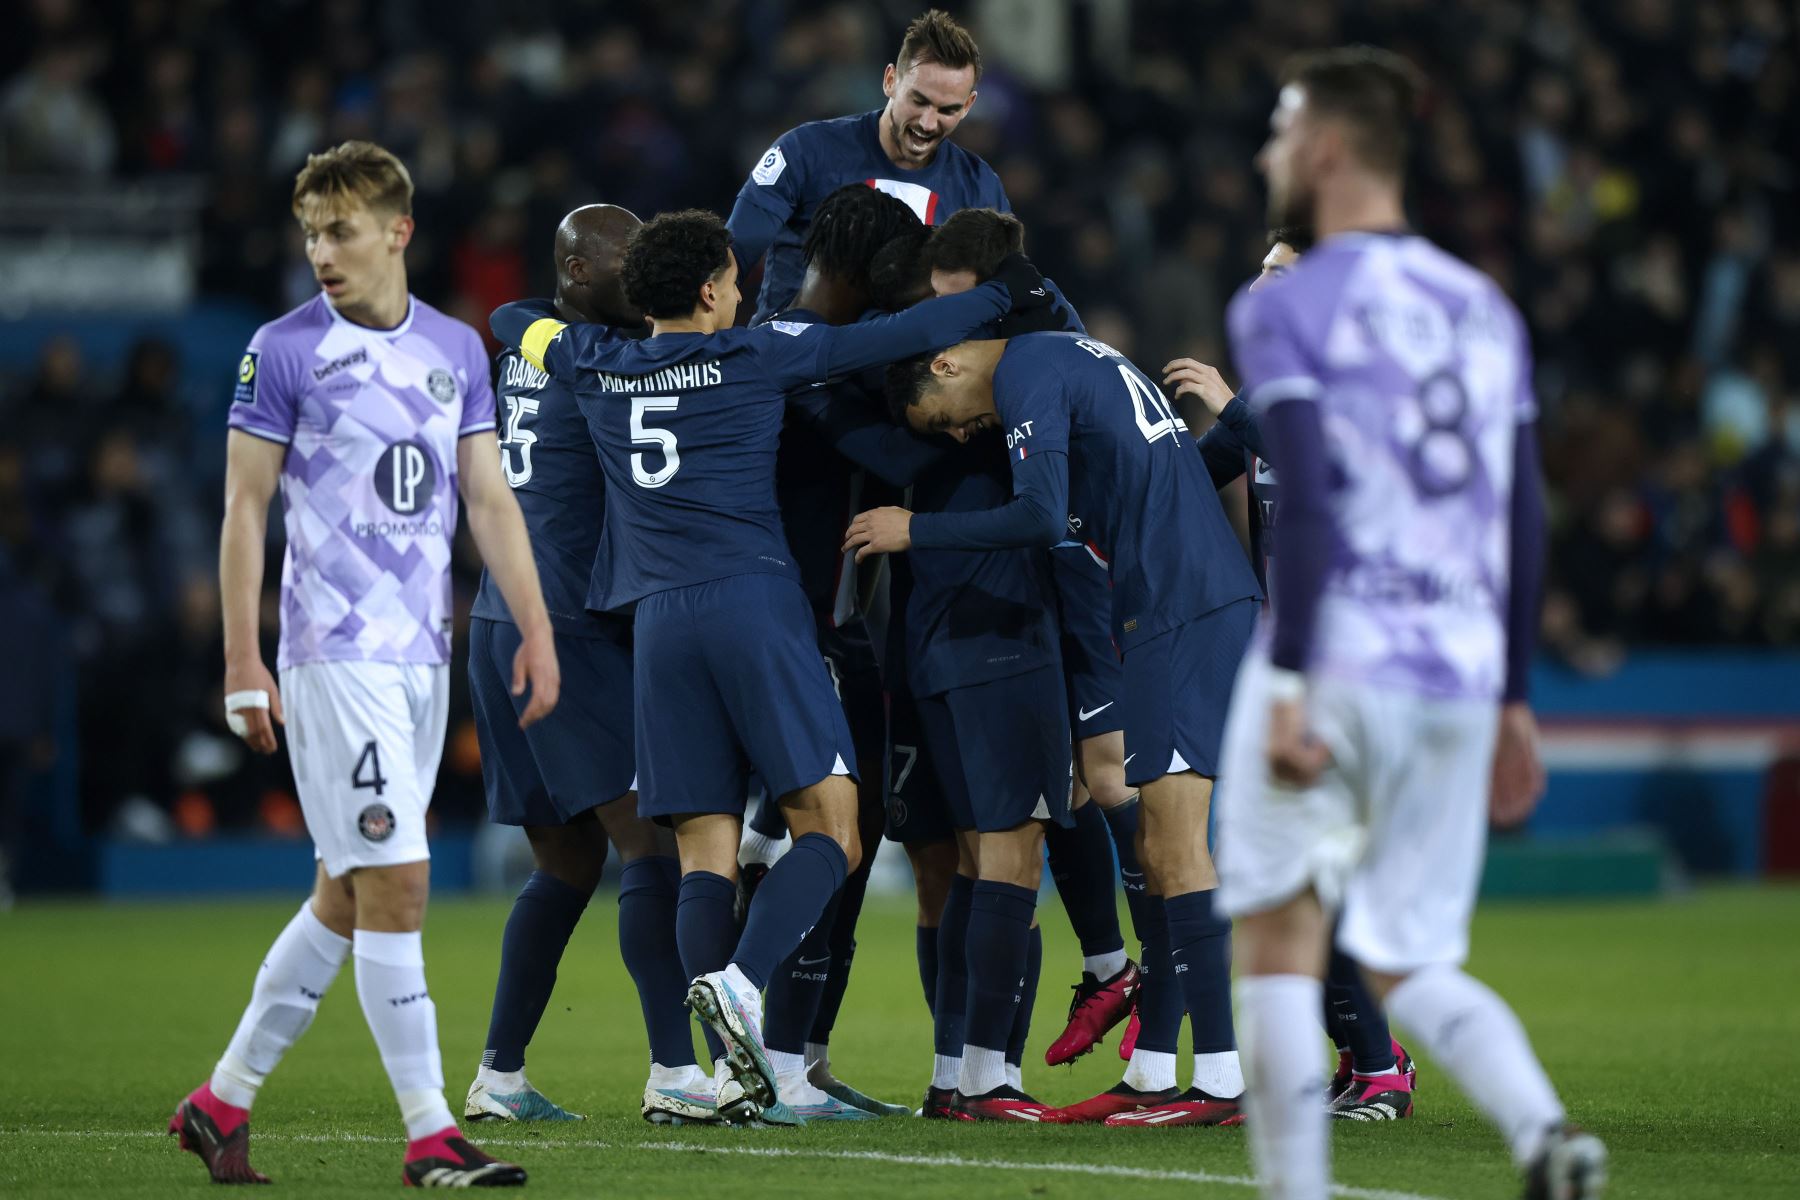 Los jugadores del Paris Saint Germain celebran después de que Lionel Messi anotara la ventaja de 2-1 durante el partido de fútbol de la Ligue 1 francesa entre el PSG y el Toulouse FC.
Foto: EFE